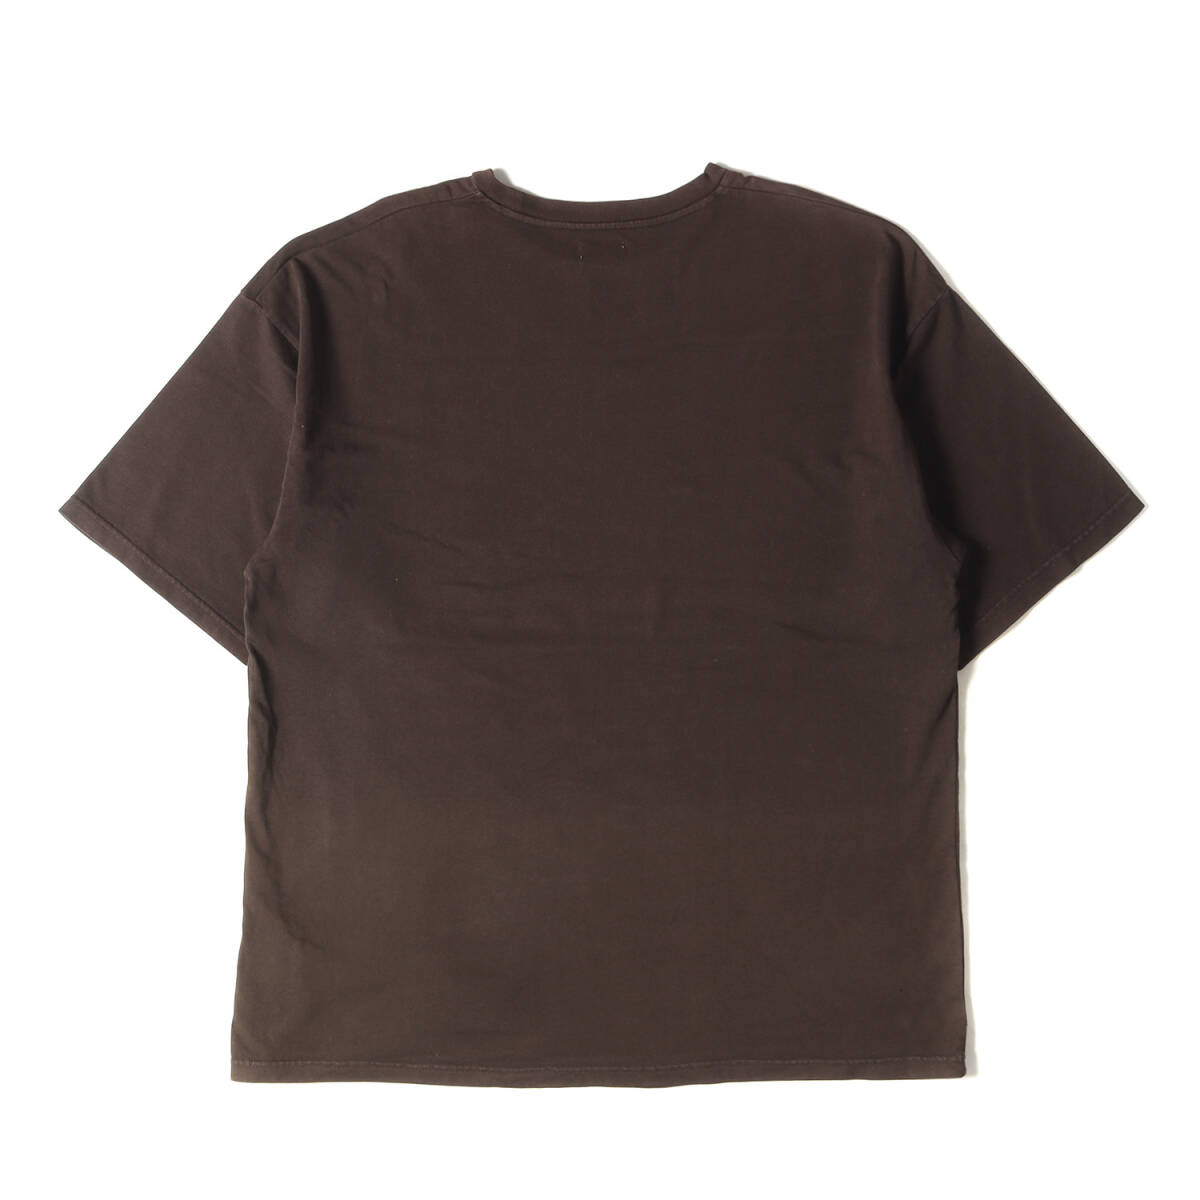 Ron Herman ロンハーマン Tシャツ サイズ:M 21AW グラデーション ヘビーウェイト クルーネック 半袖Tシャツ ブラウン トップス カットソー_画像2